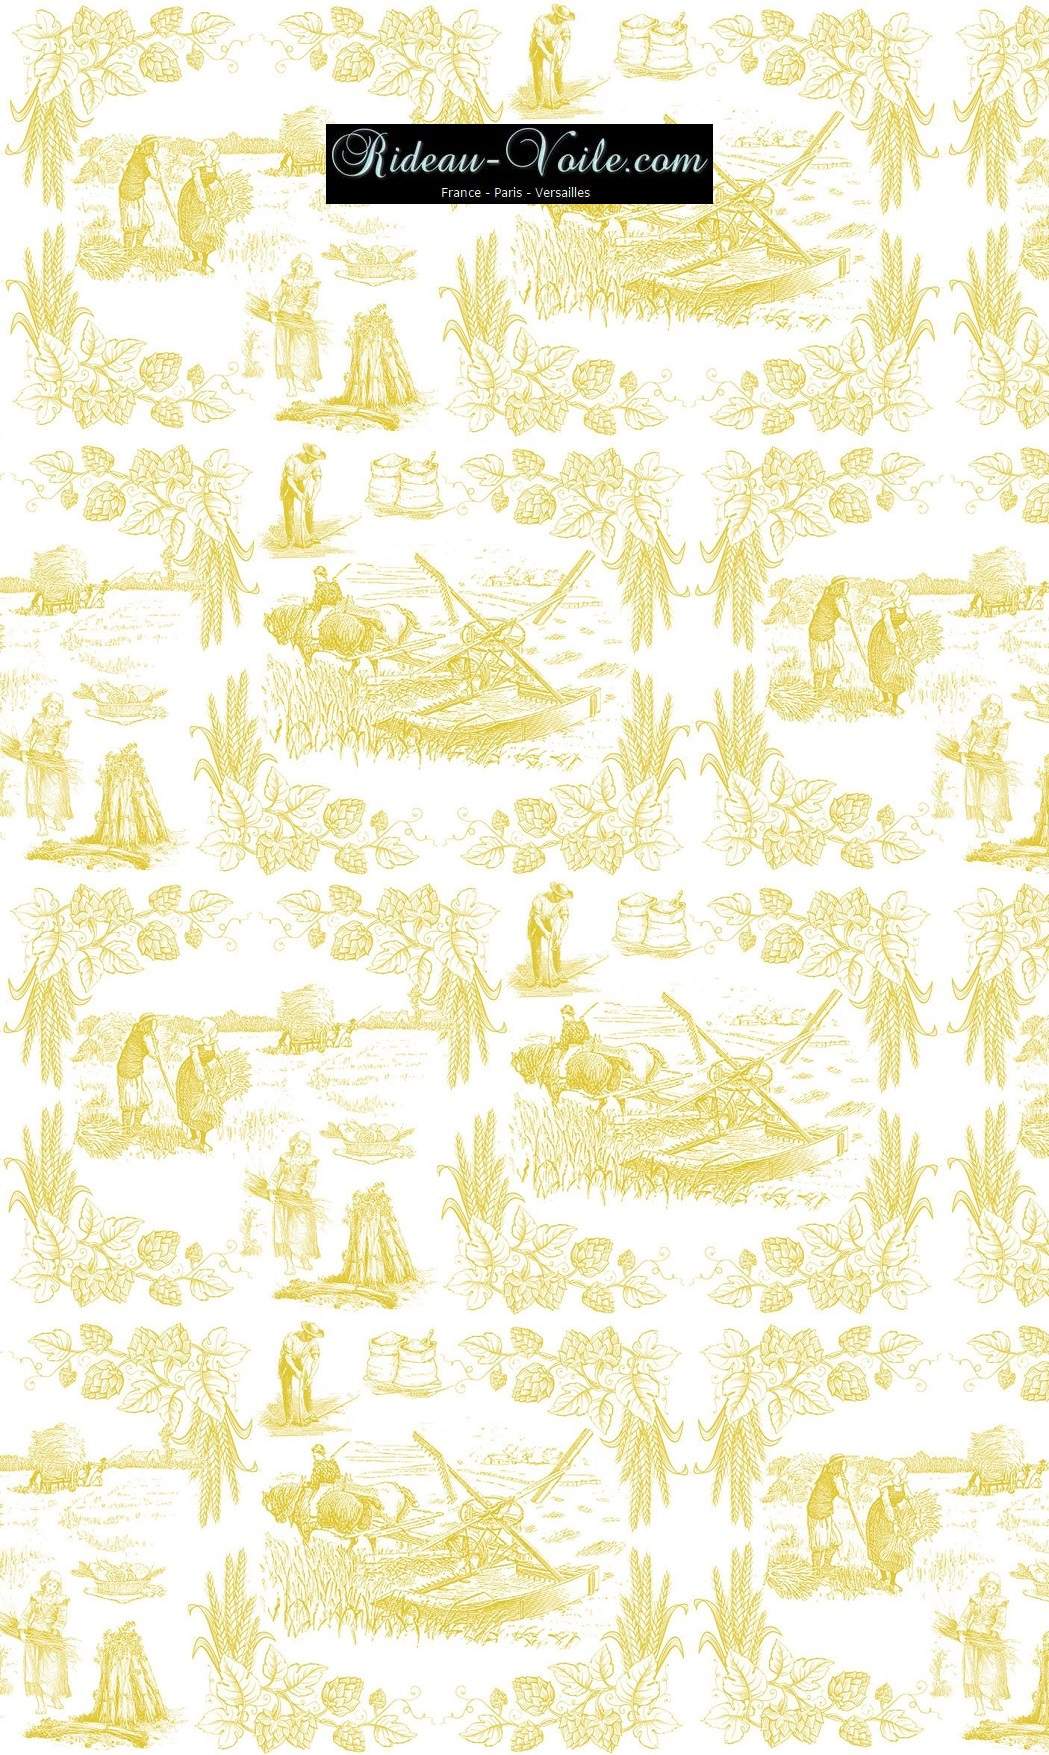 Toile de Jouy tissu au mètre ameublement textile Paris Versailles Yvelines decoration french pattern haut gamme jaune